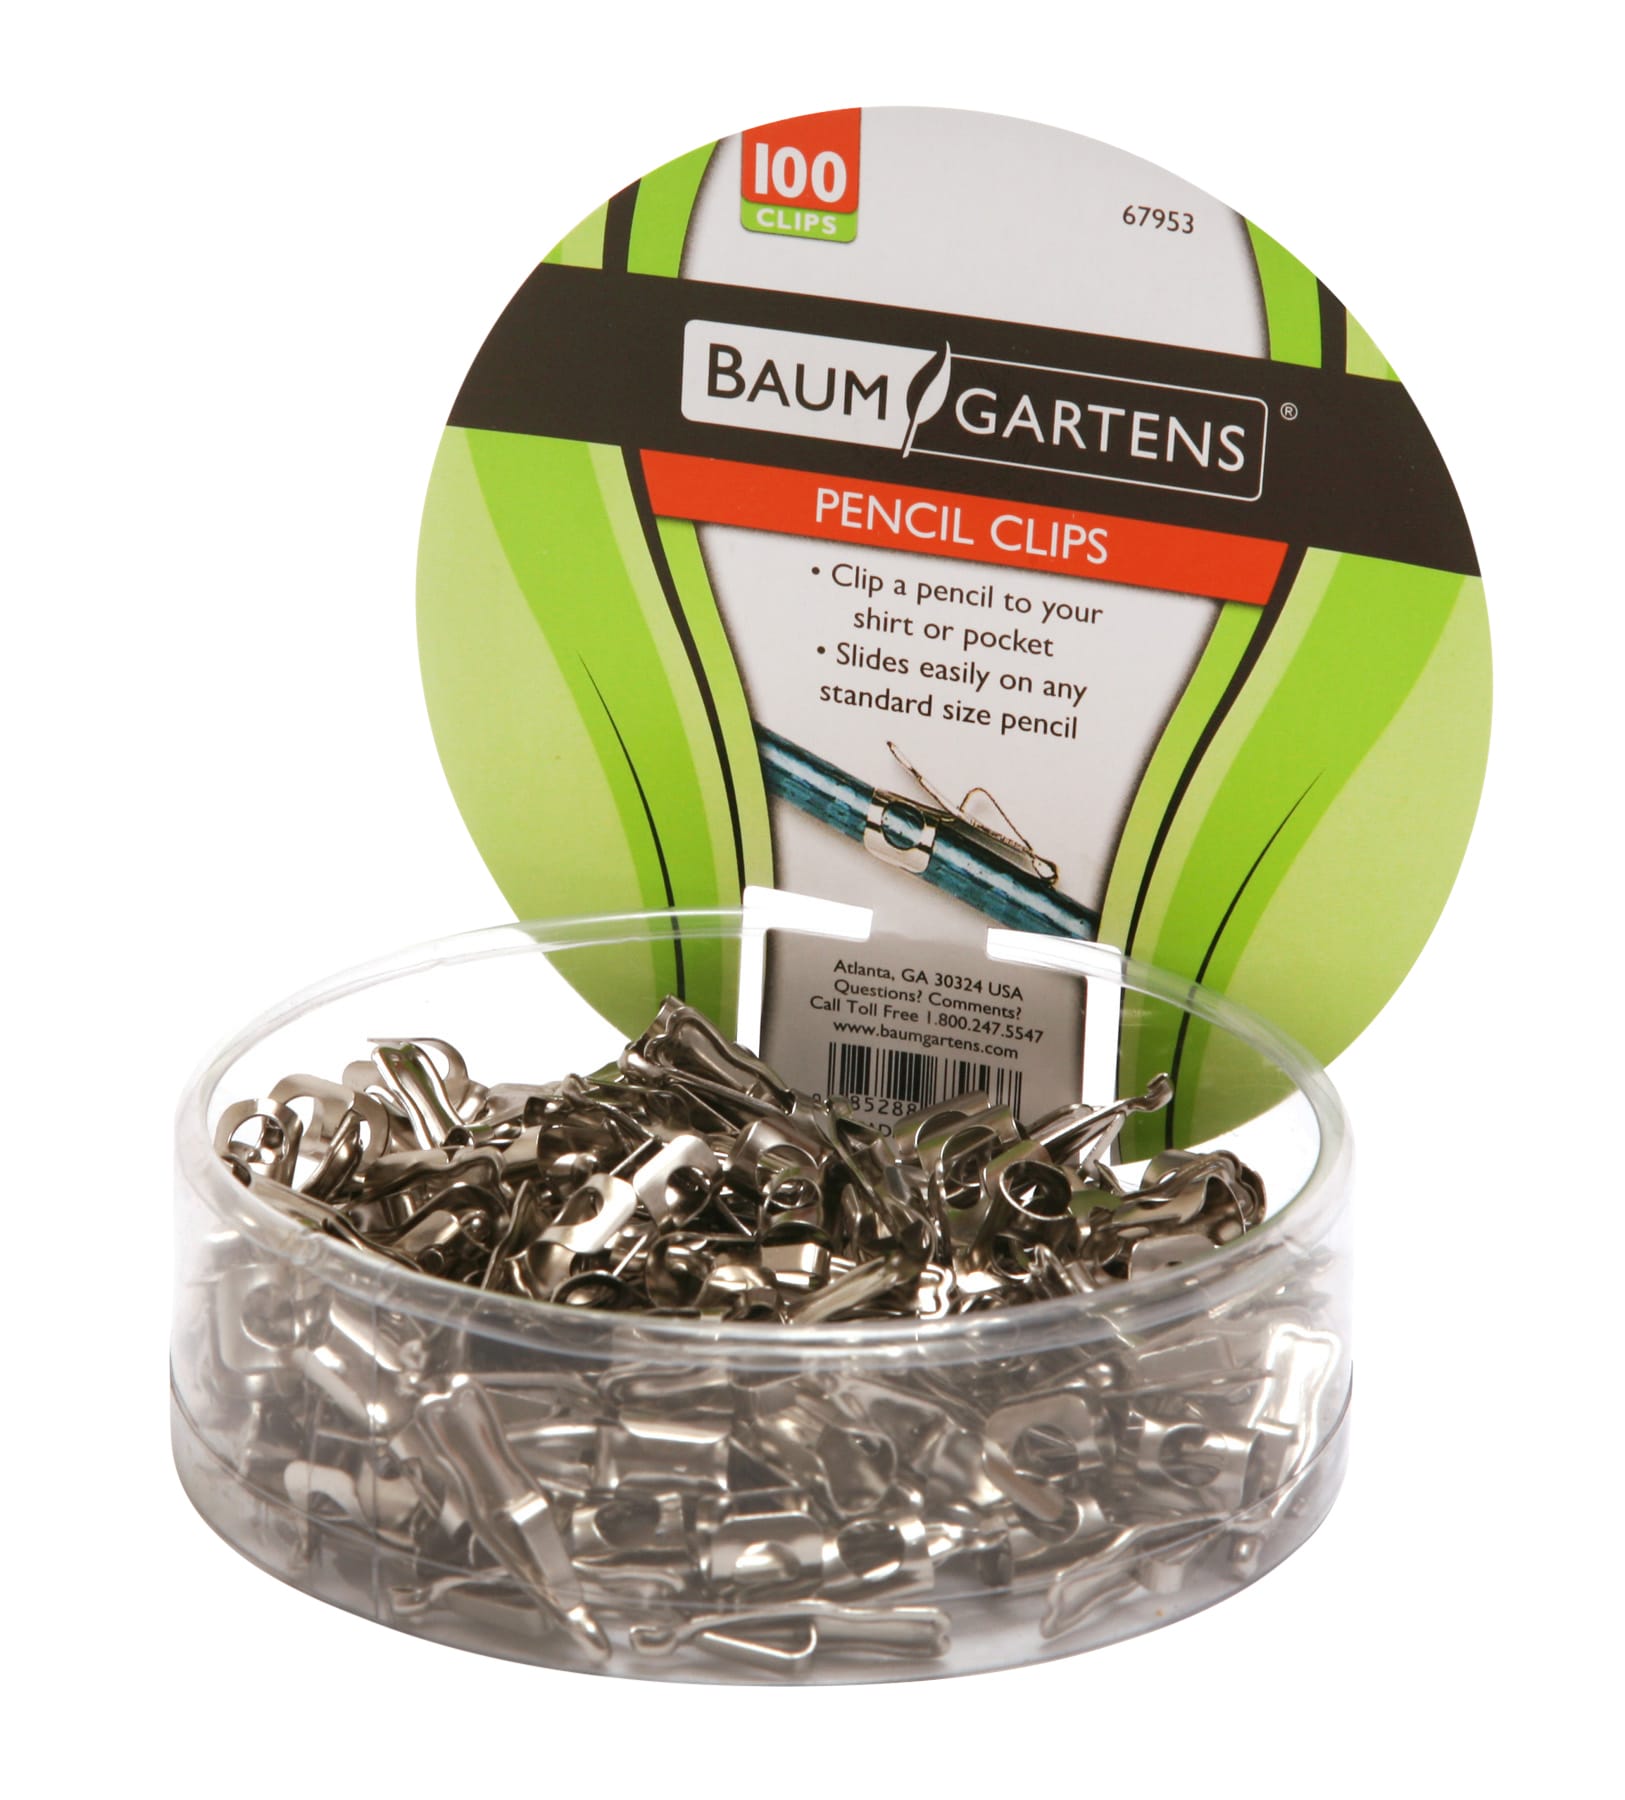 Baumgartens Pencil Clips 100 Pack CHROME (67953)